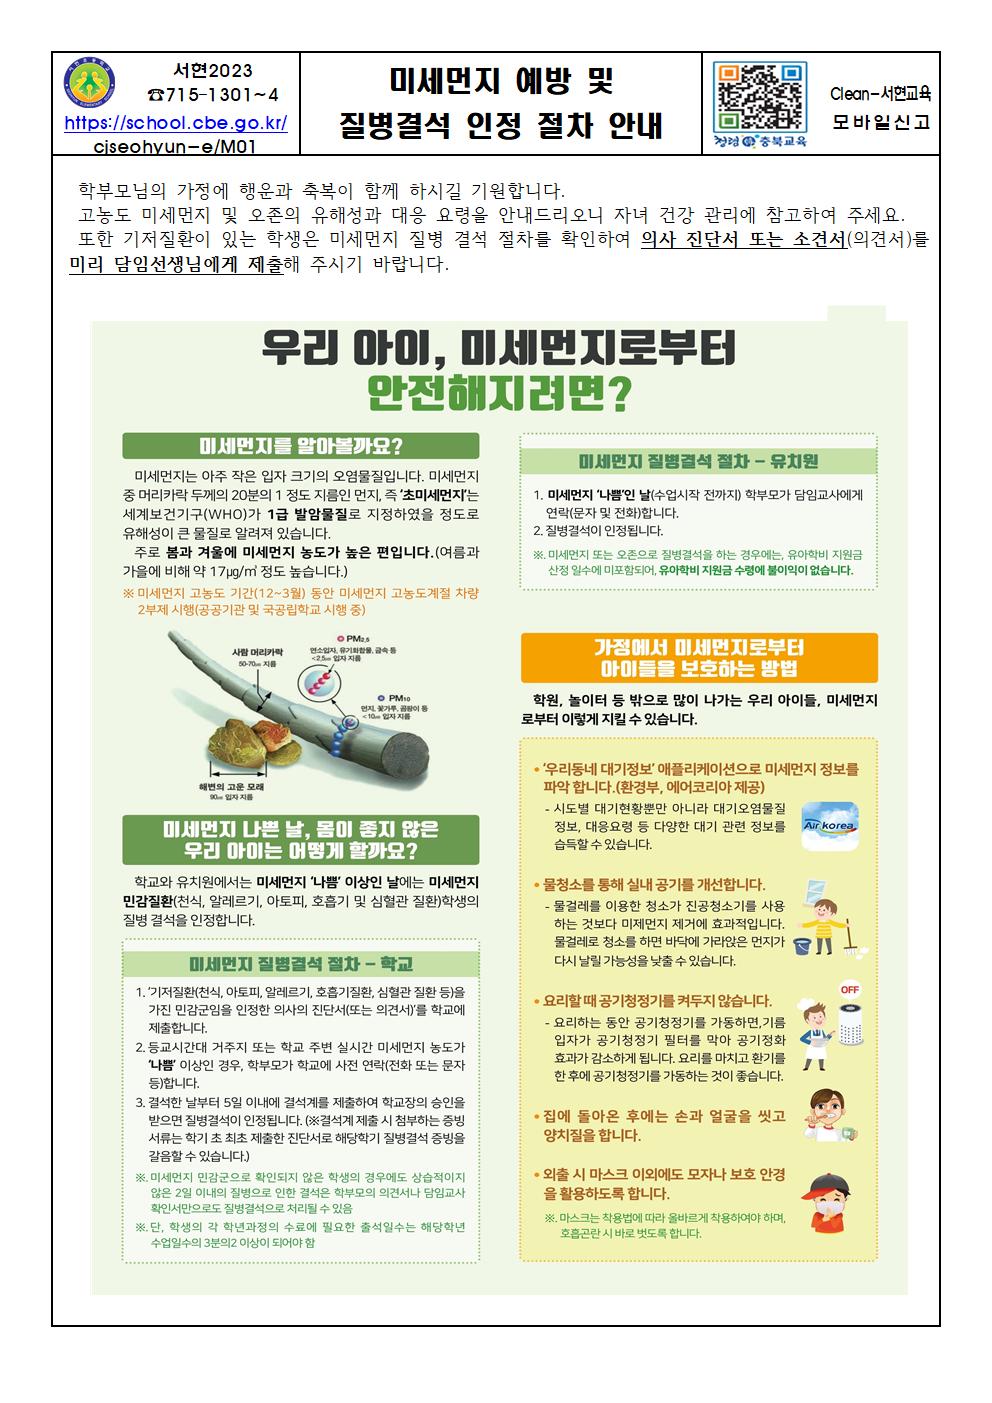 미세먼지 예방 및 질병결석 인정 절차 안내문001